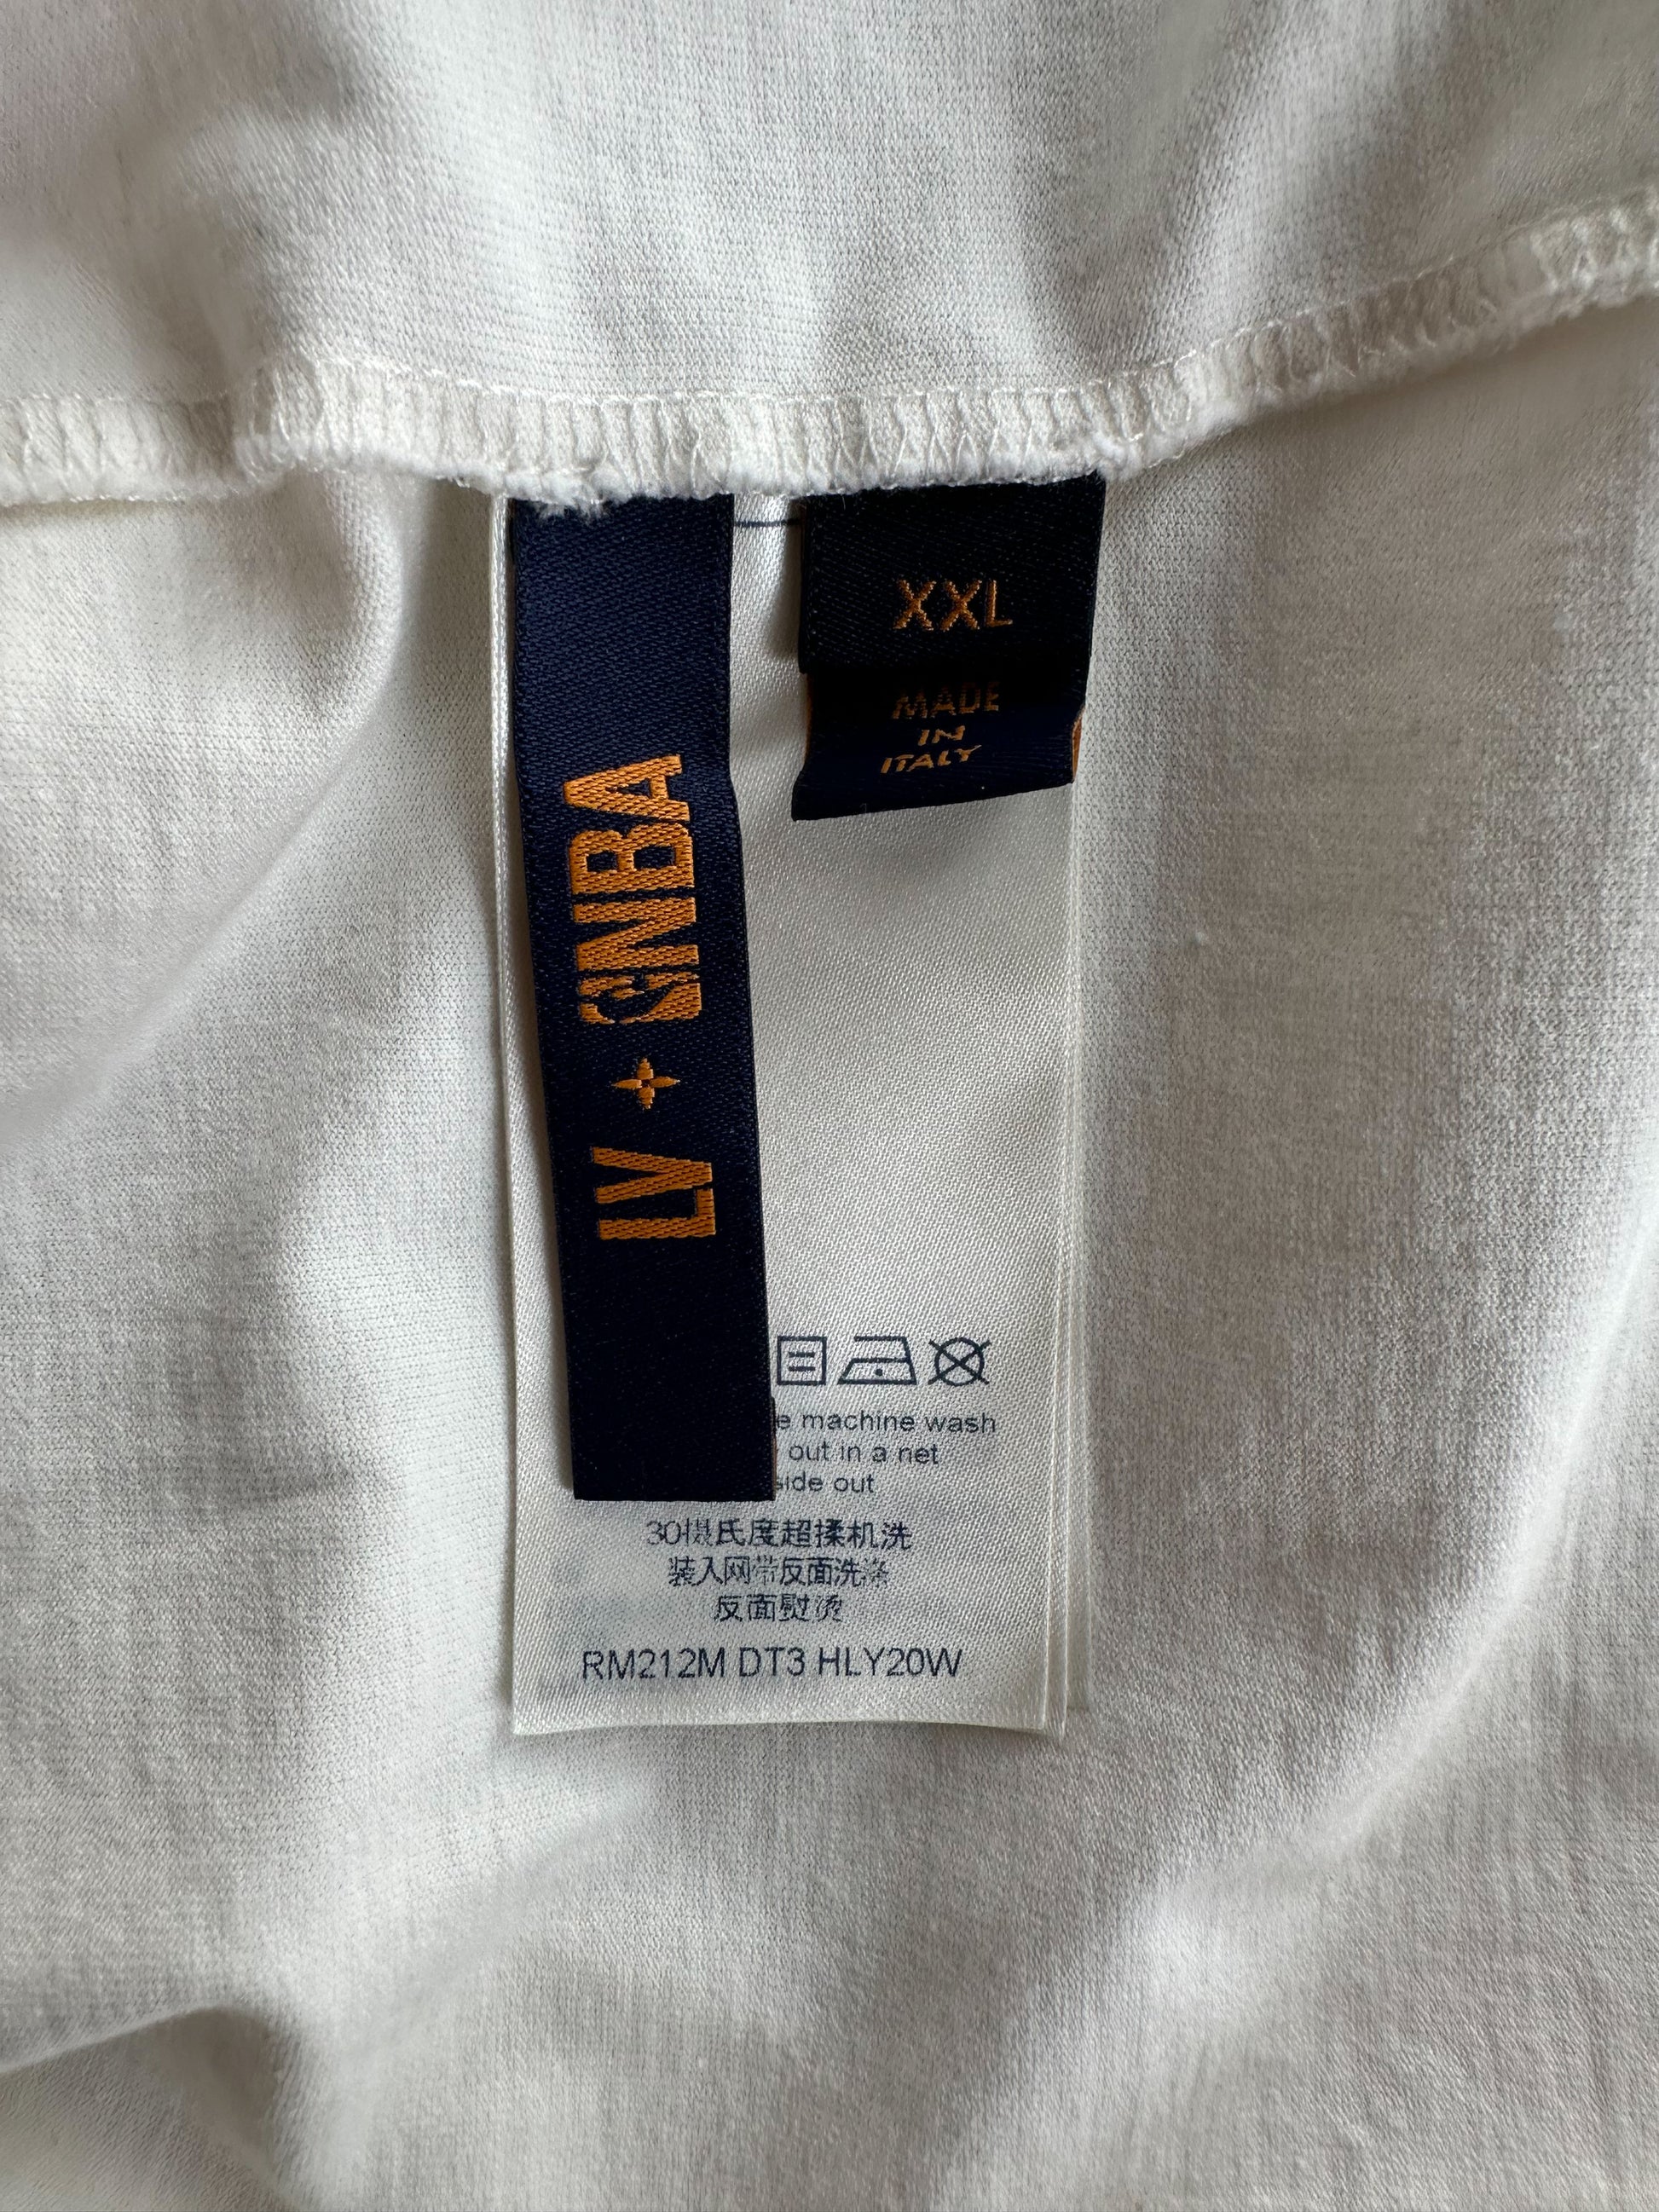 Louis Vuitton NBA White Logo T-Shirt